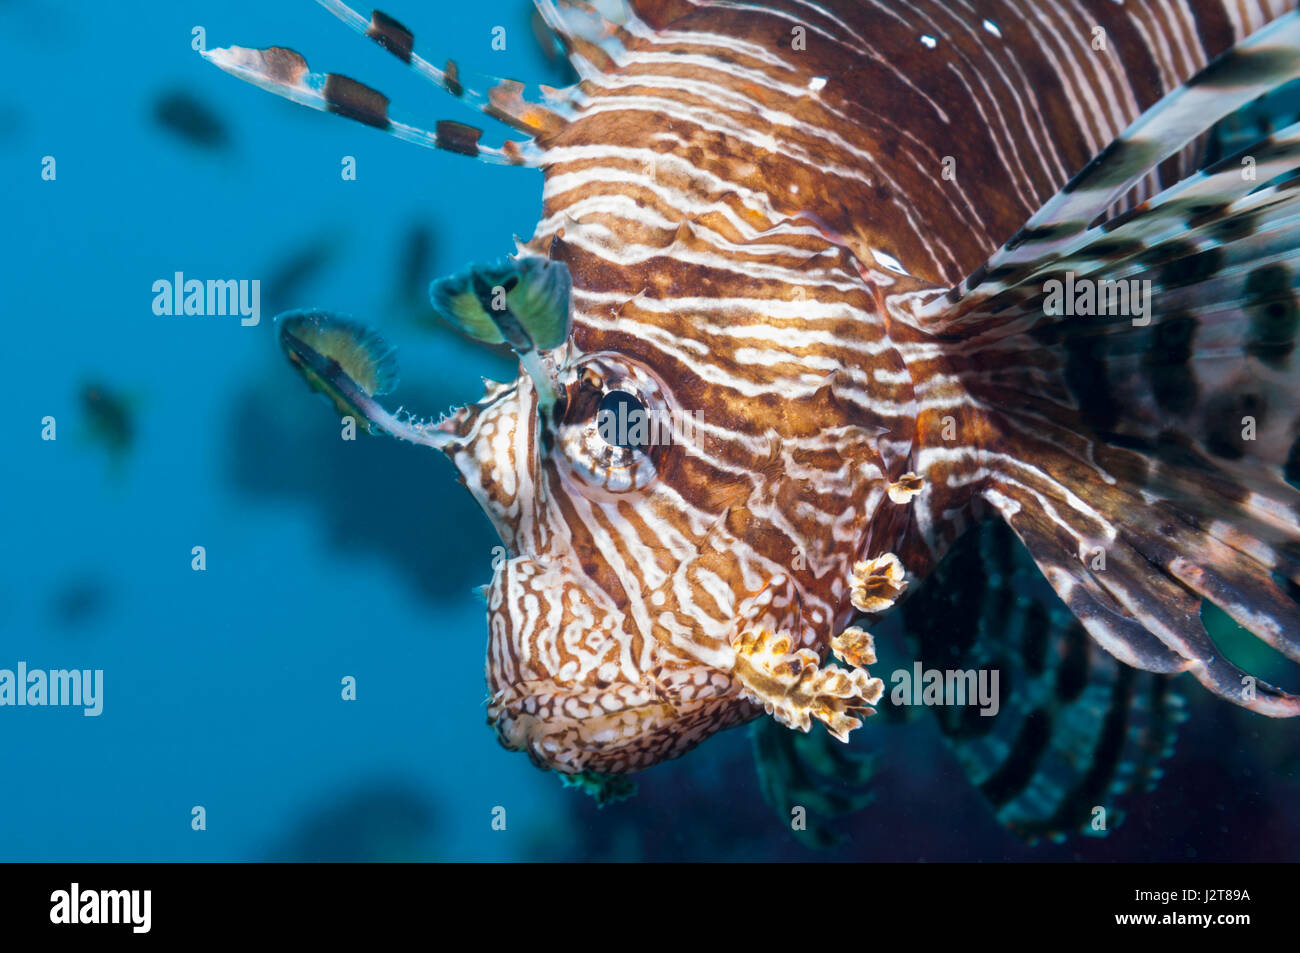 Poisson-papillon commun ou devil firefish (Pterois miles). Souvent confondu avec poisson-papillon rouge (Pterois volitans). Endémique de la Mer Rouge. L'Egypte, Mer Rouge. Banque D'Images